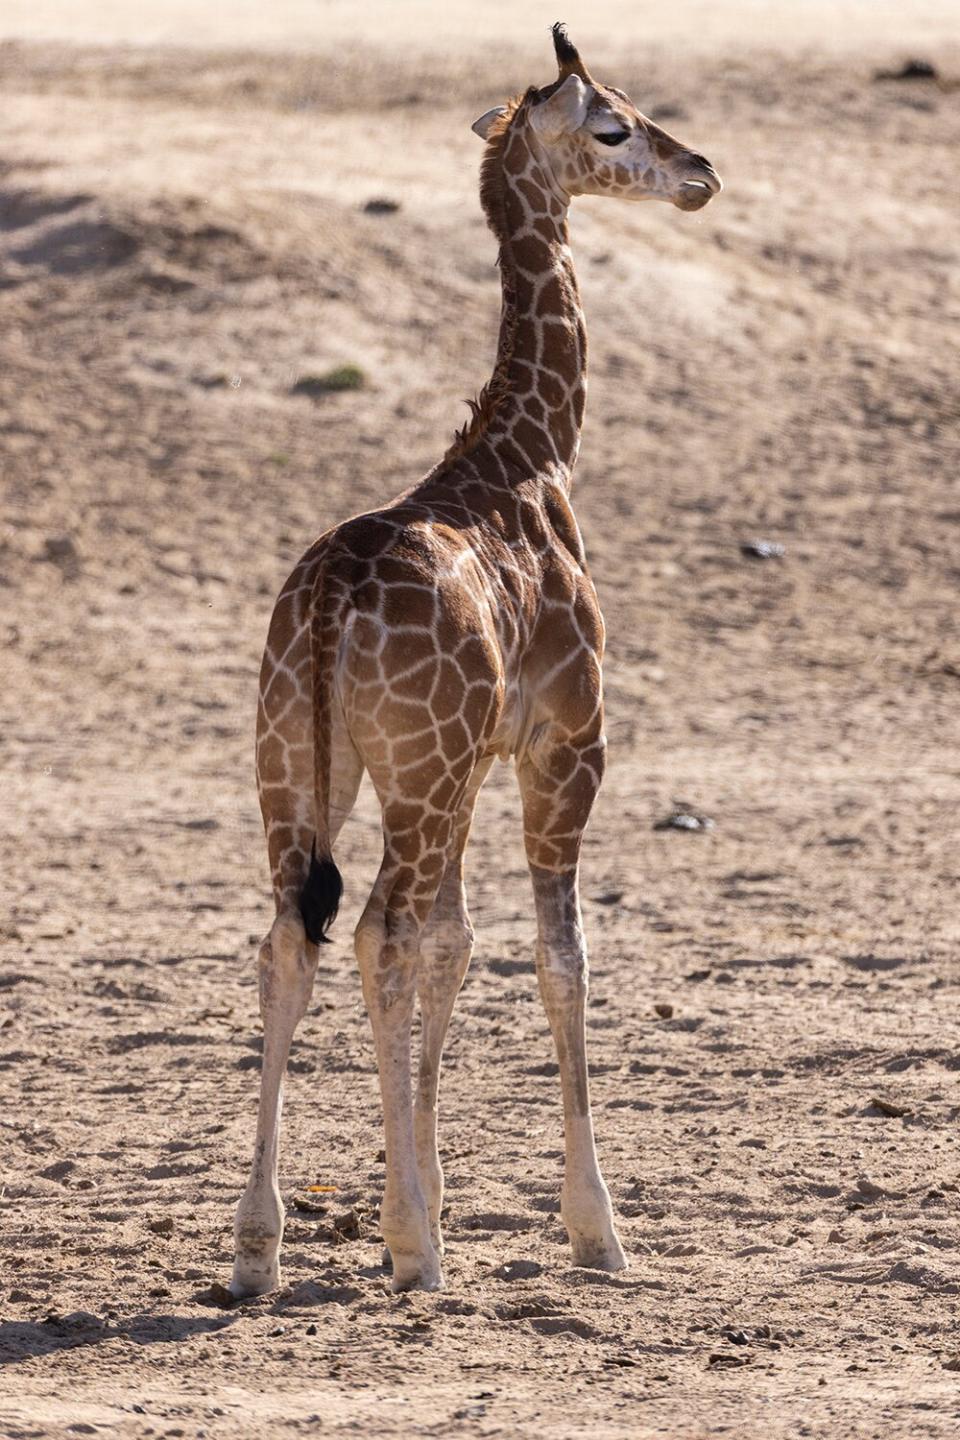 Giraffe leg braces